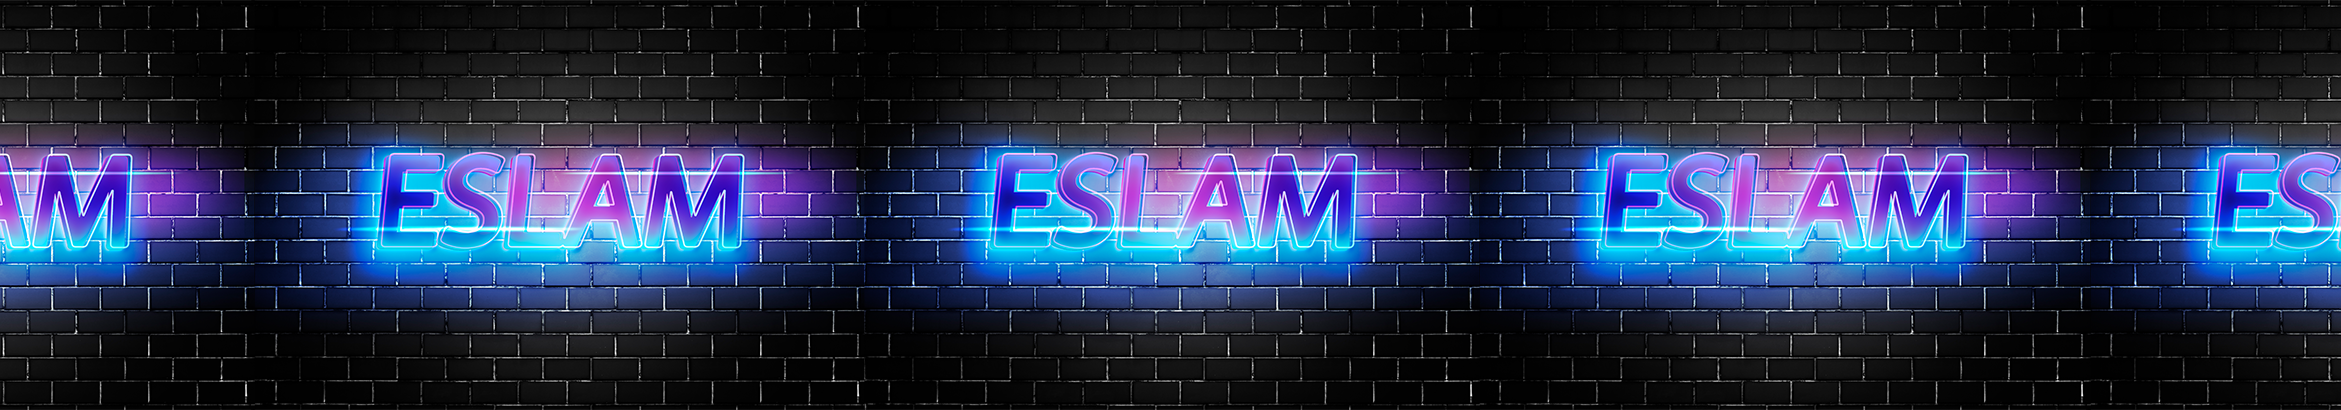 Eslam Marwan profil başlığı